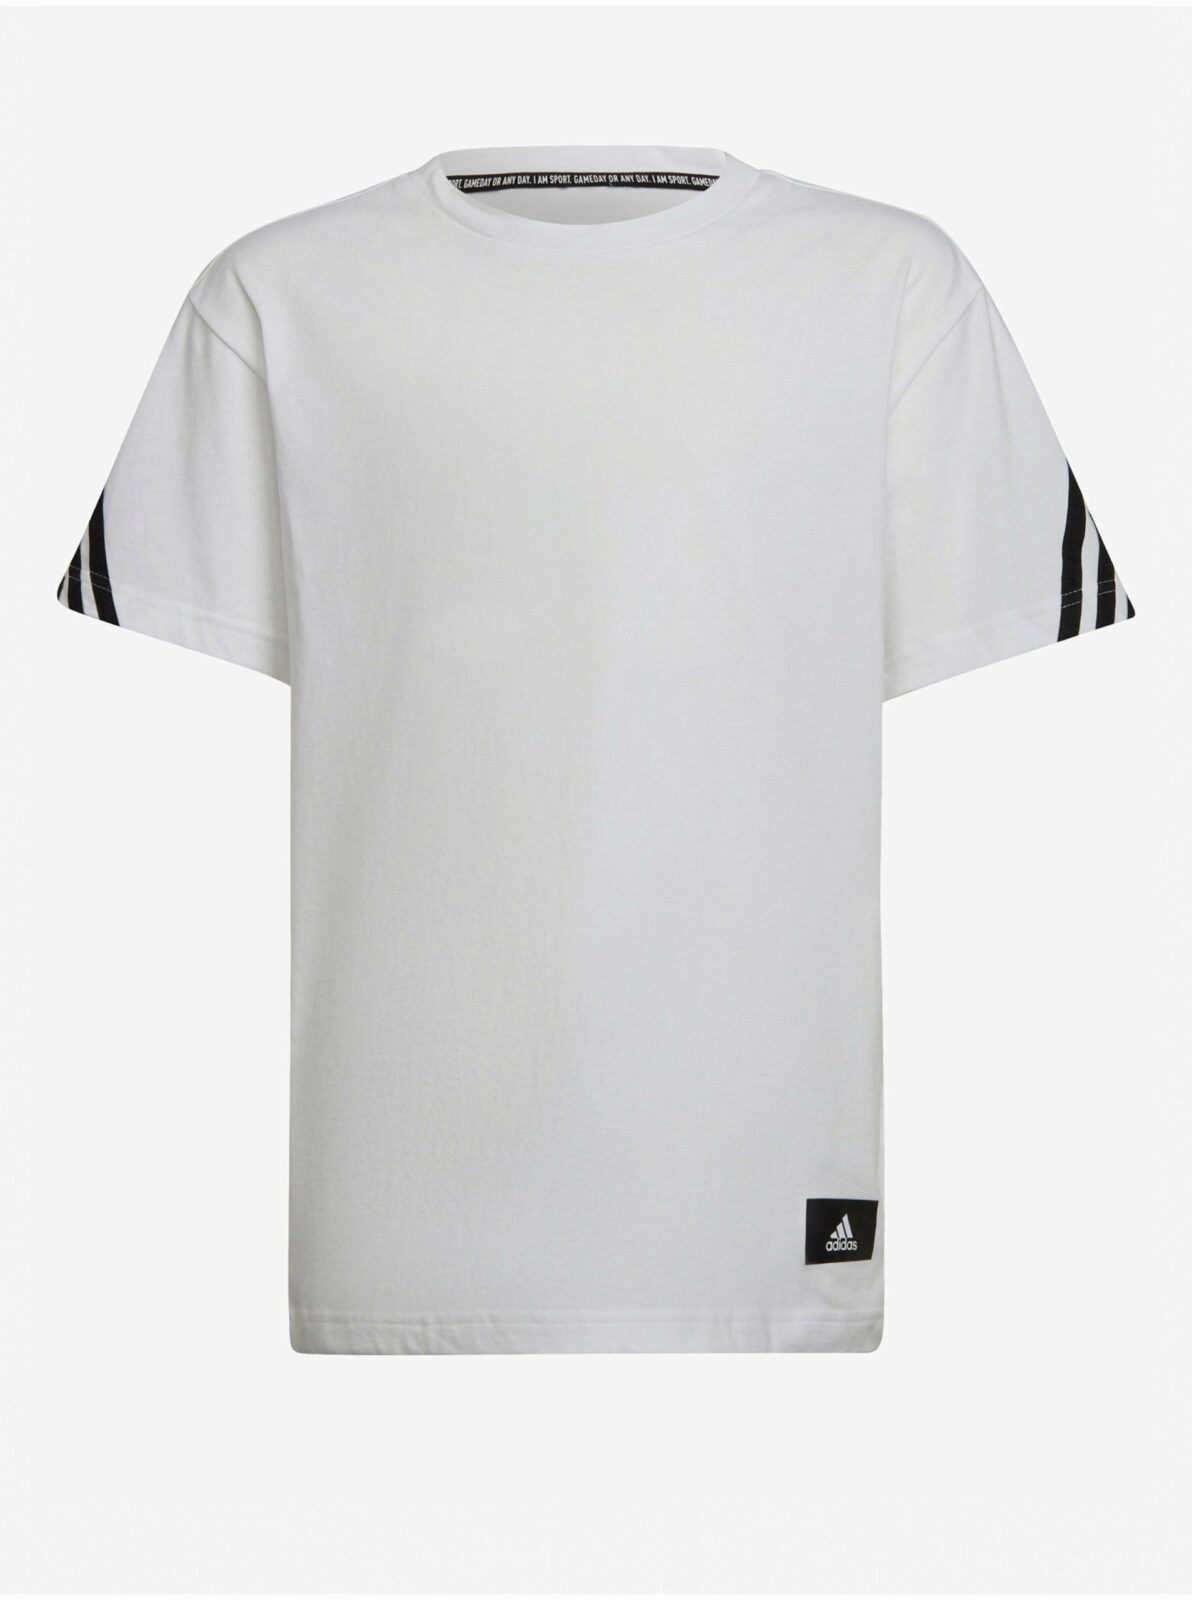 Černo-bílé dětské tričko adidas Performance B FI